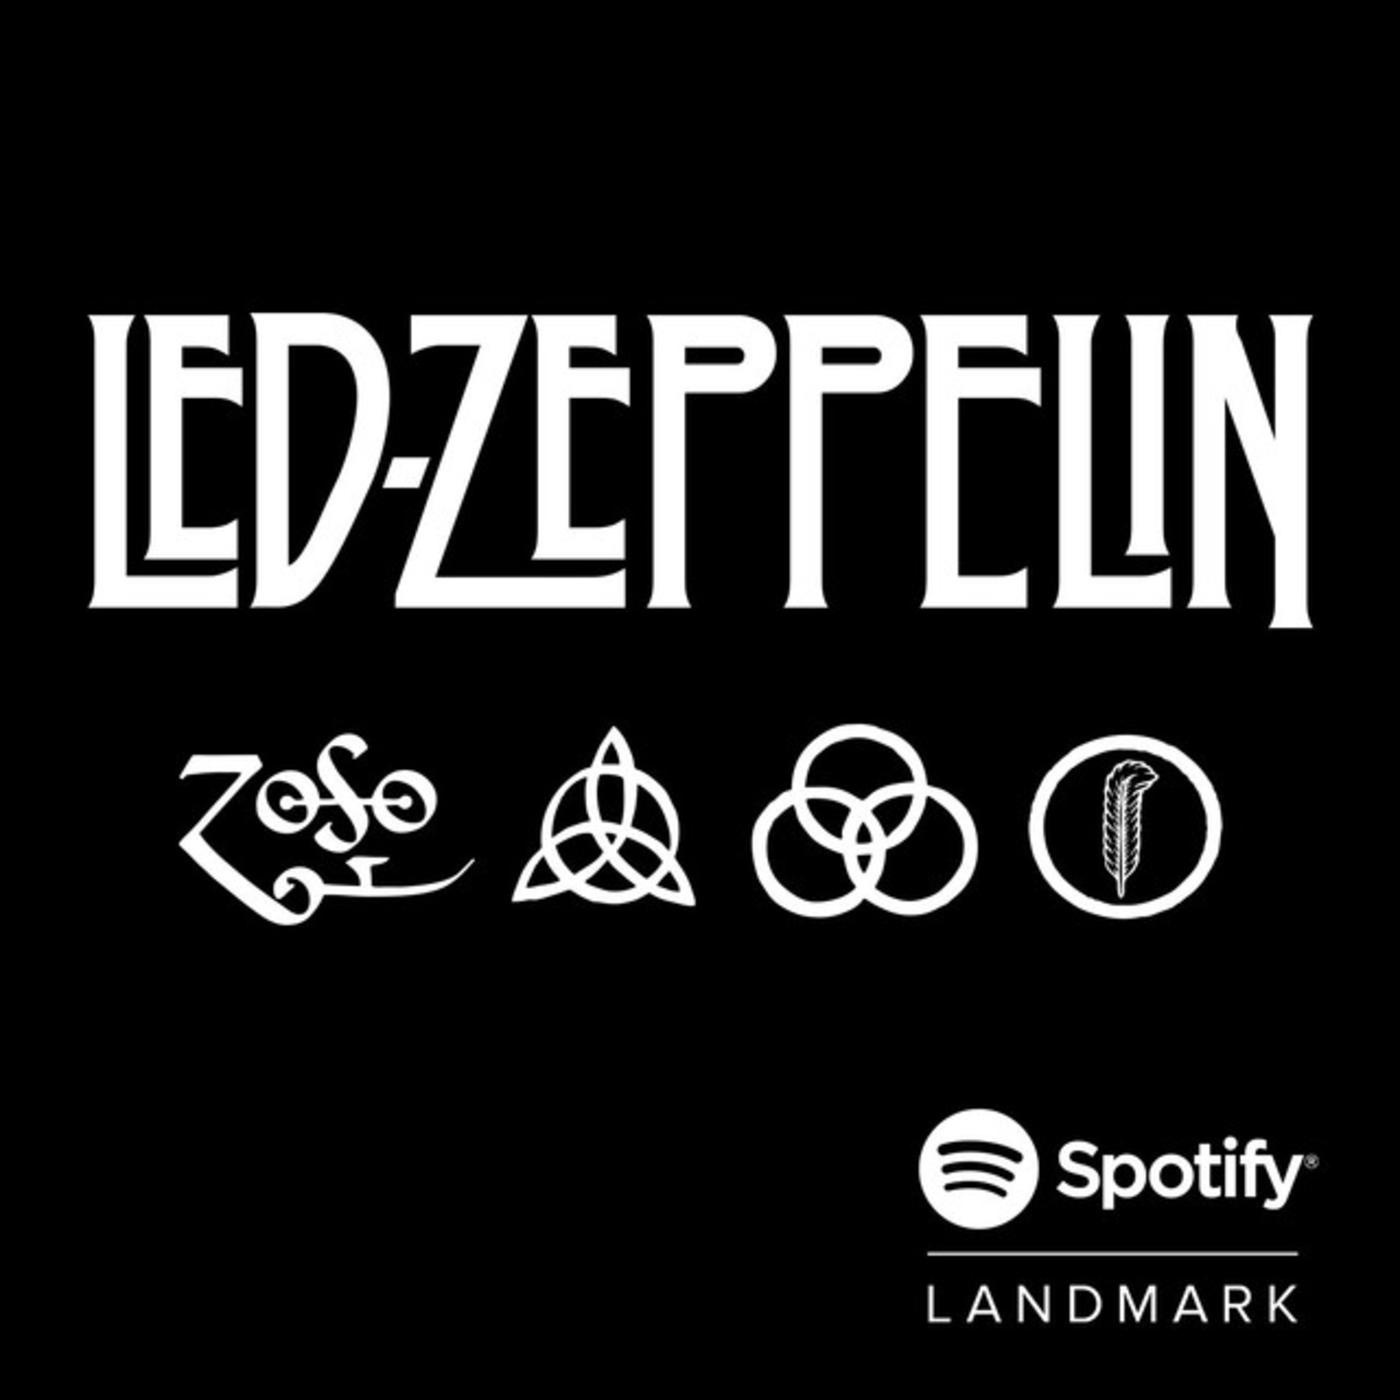 Spotify Landmark: Led Zeppelin's "IV"